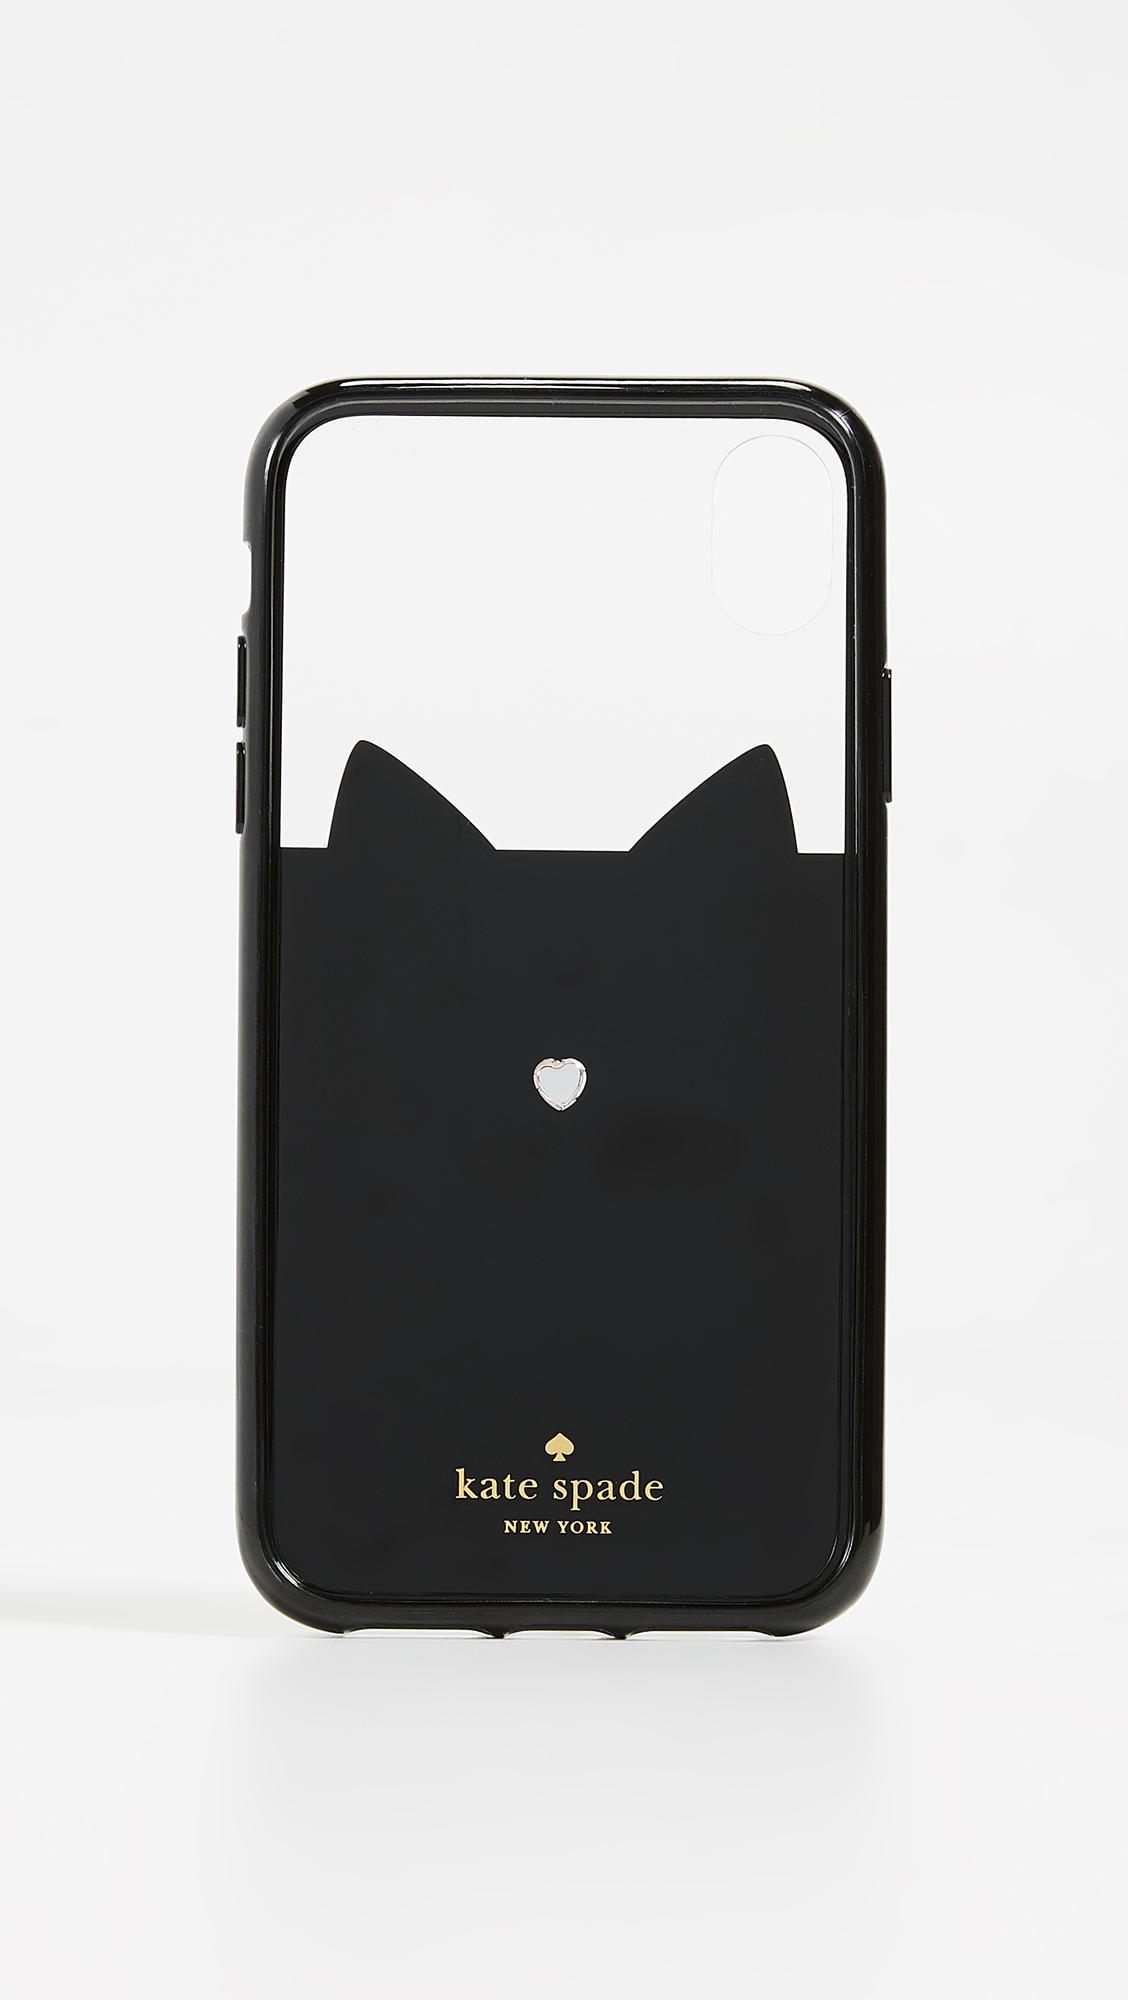 Kate Spade Jeweled Glitter Cat Iphone Xs Max Case in Black | Lyst